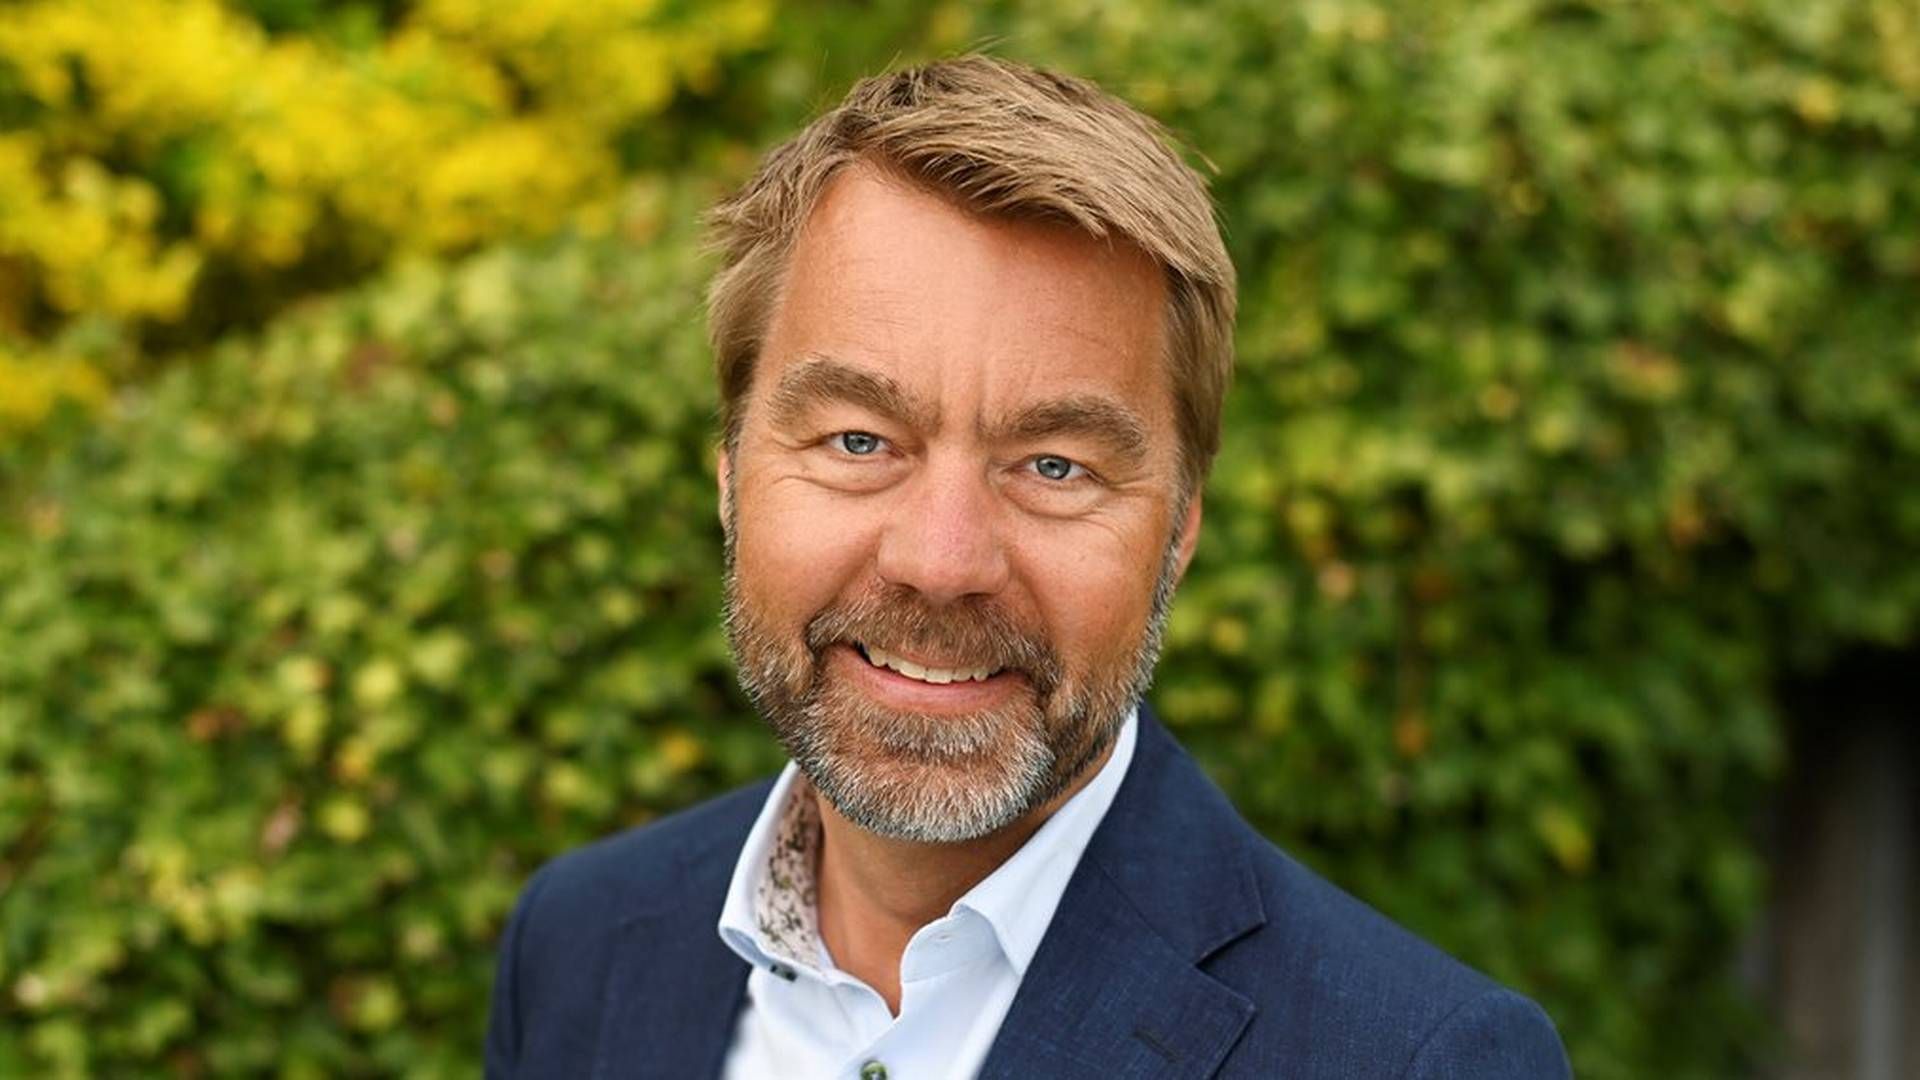 GÅR UT MED RESULTATVARSEL: Jesper Göransson er administrerende direktør i Peab AB | Foto: Annika Persson / Peab